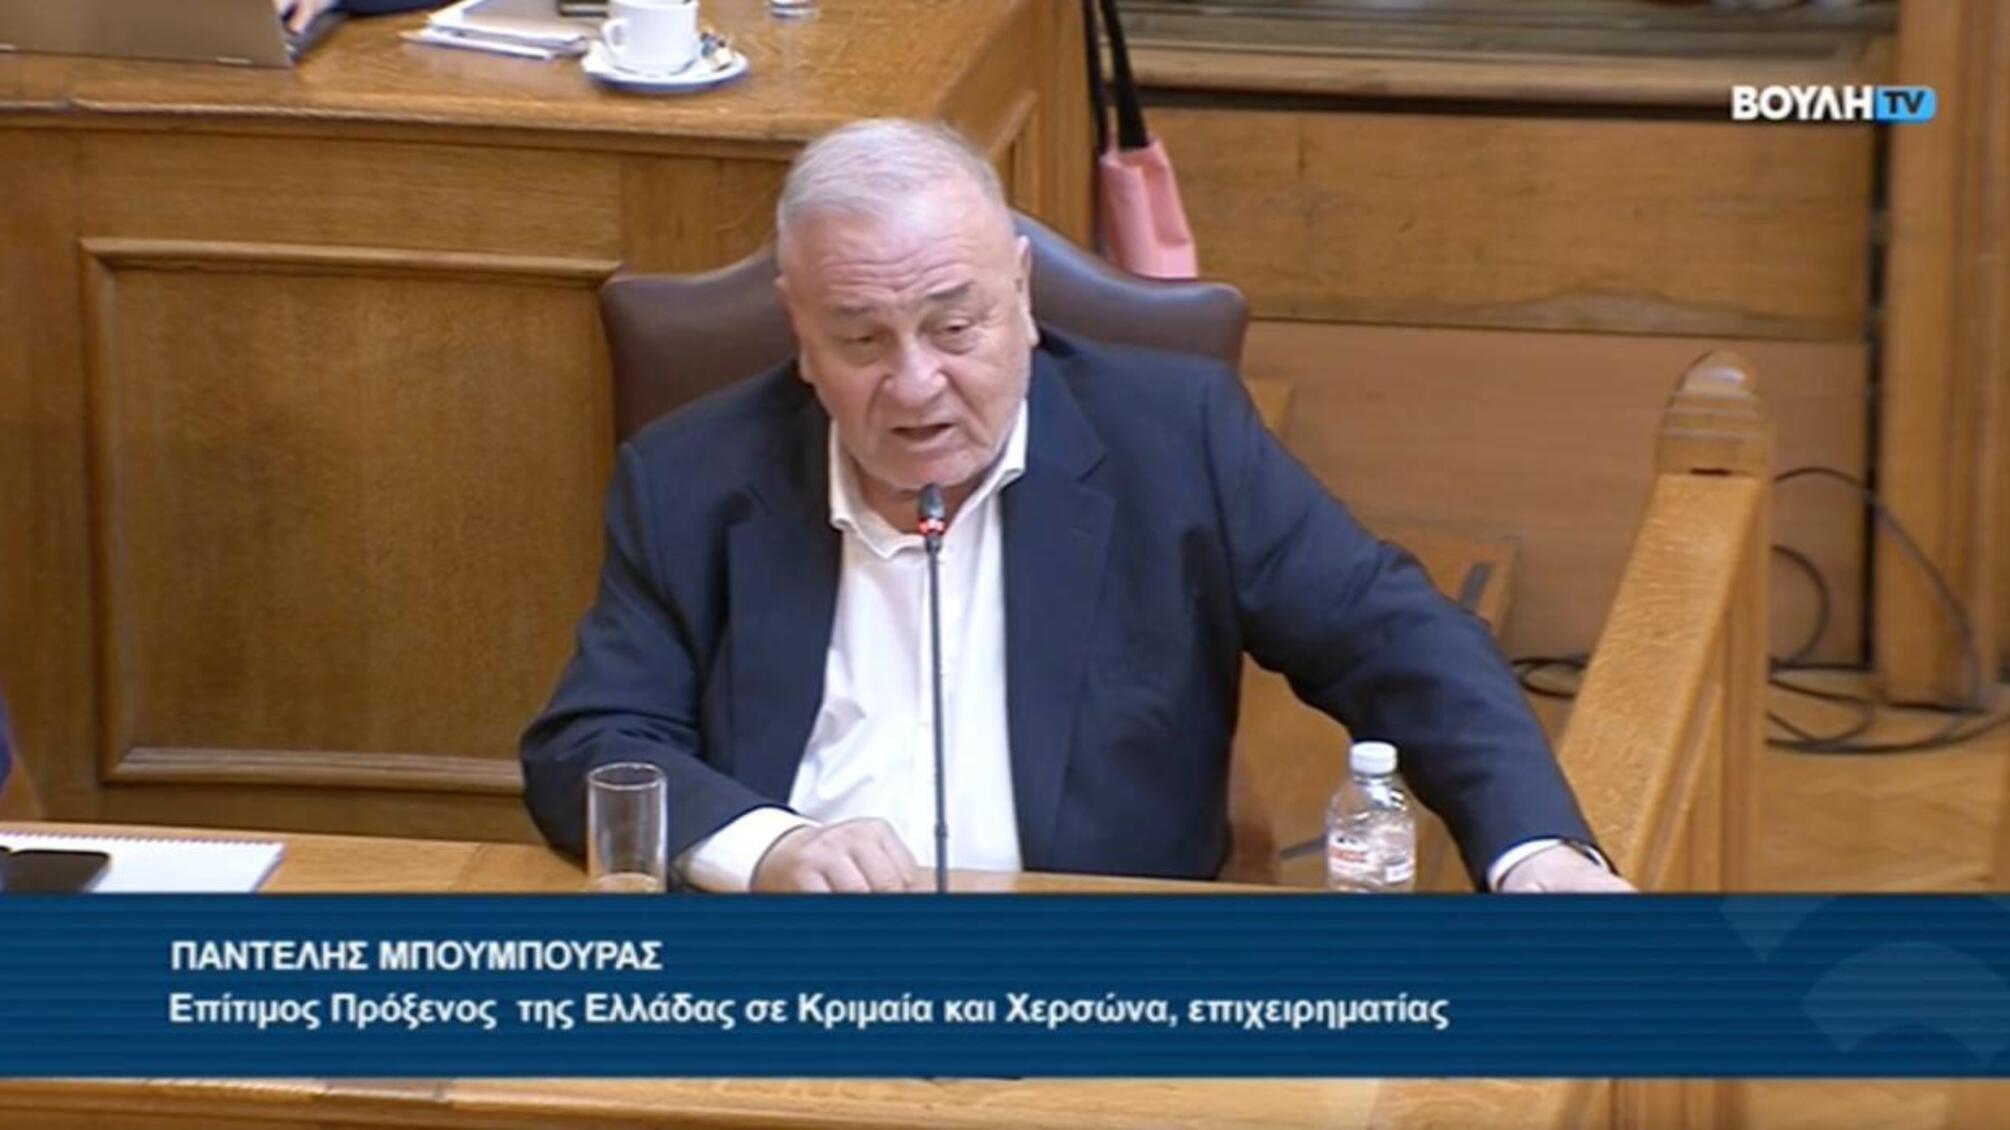 'Хто йому платить за поширення таких наративів?': у парламенті Греції розкритикували виступ проросійського депутата